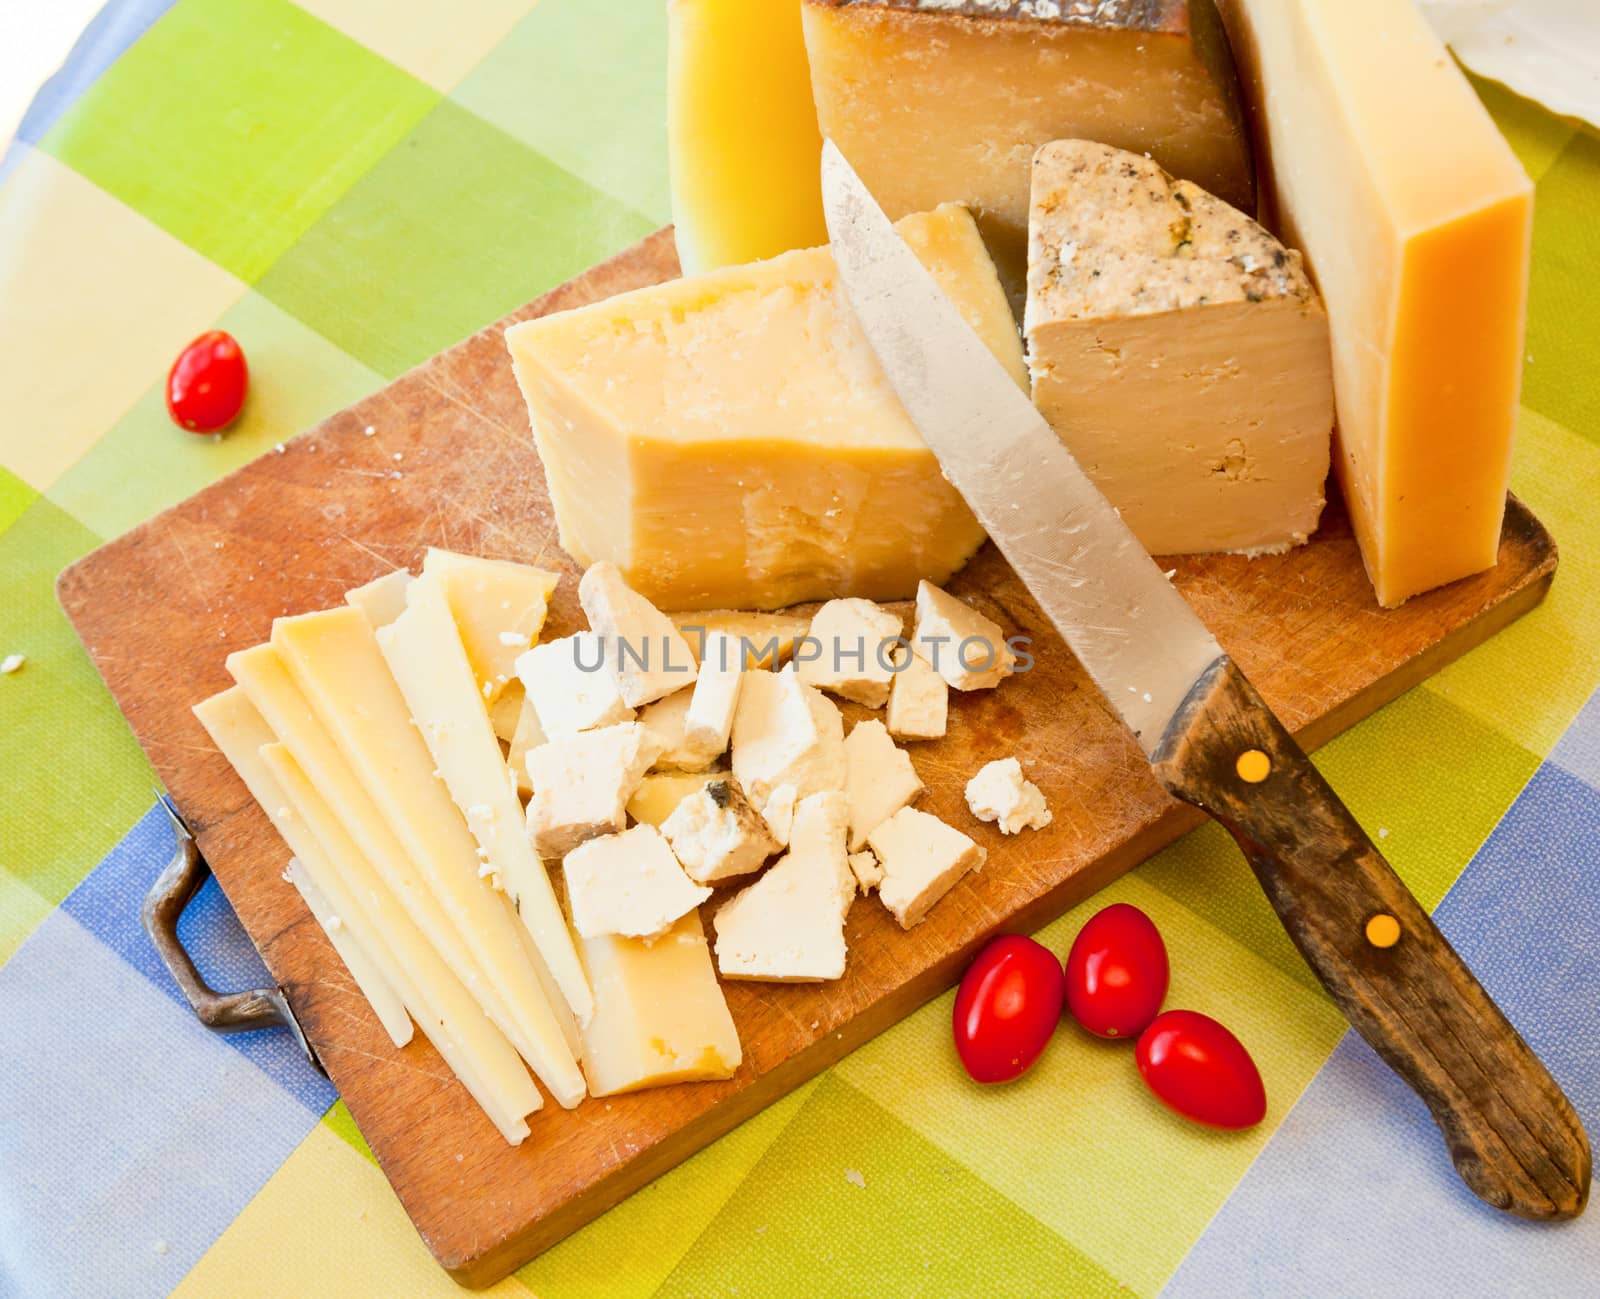 Pecorino sardo cheese slices on wooden board